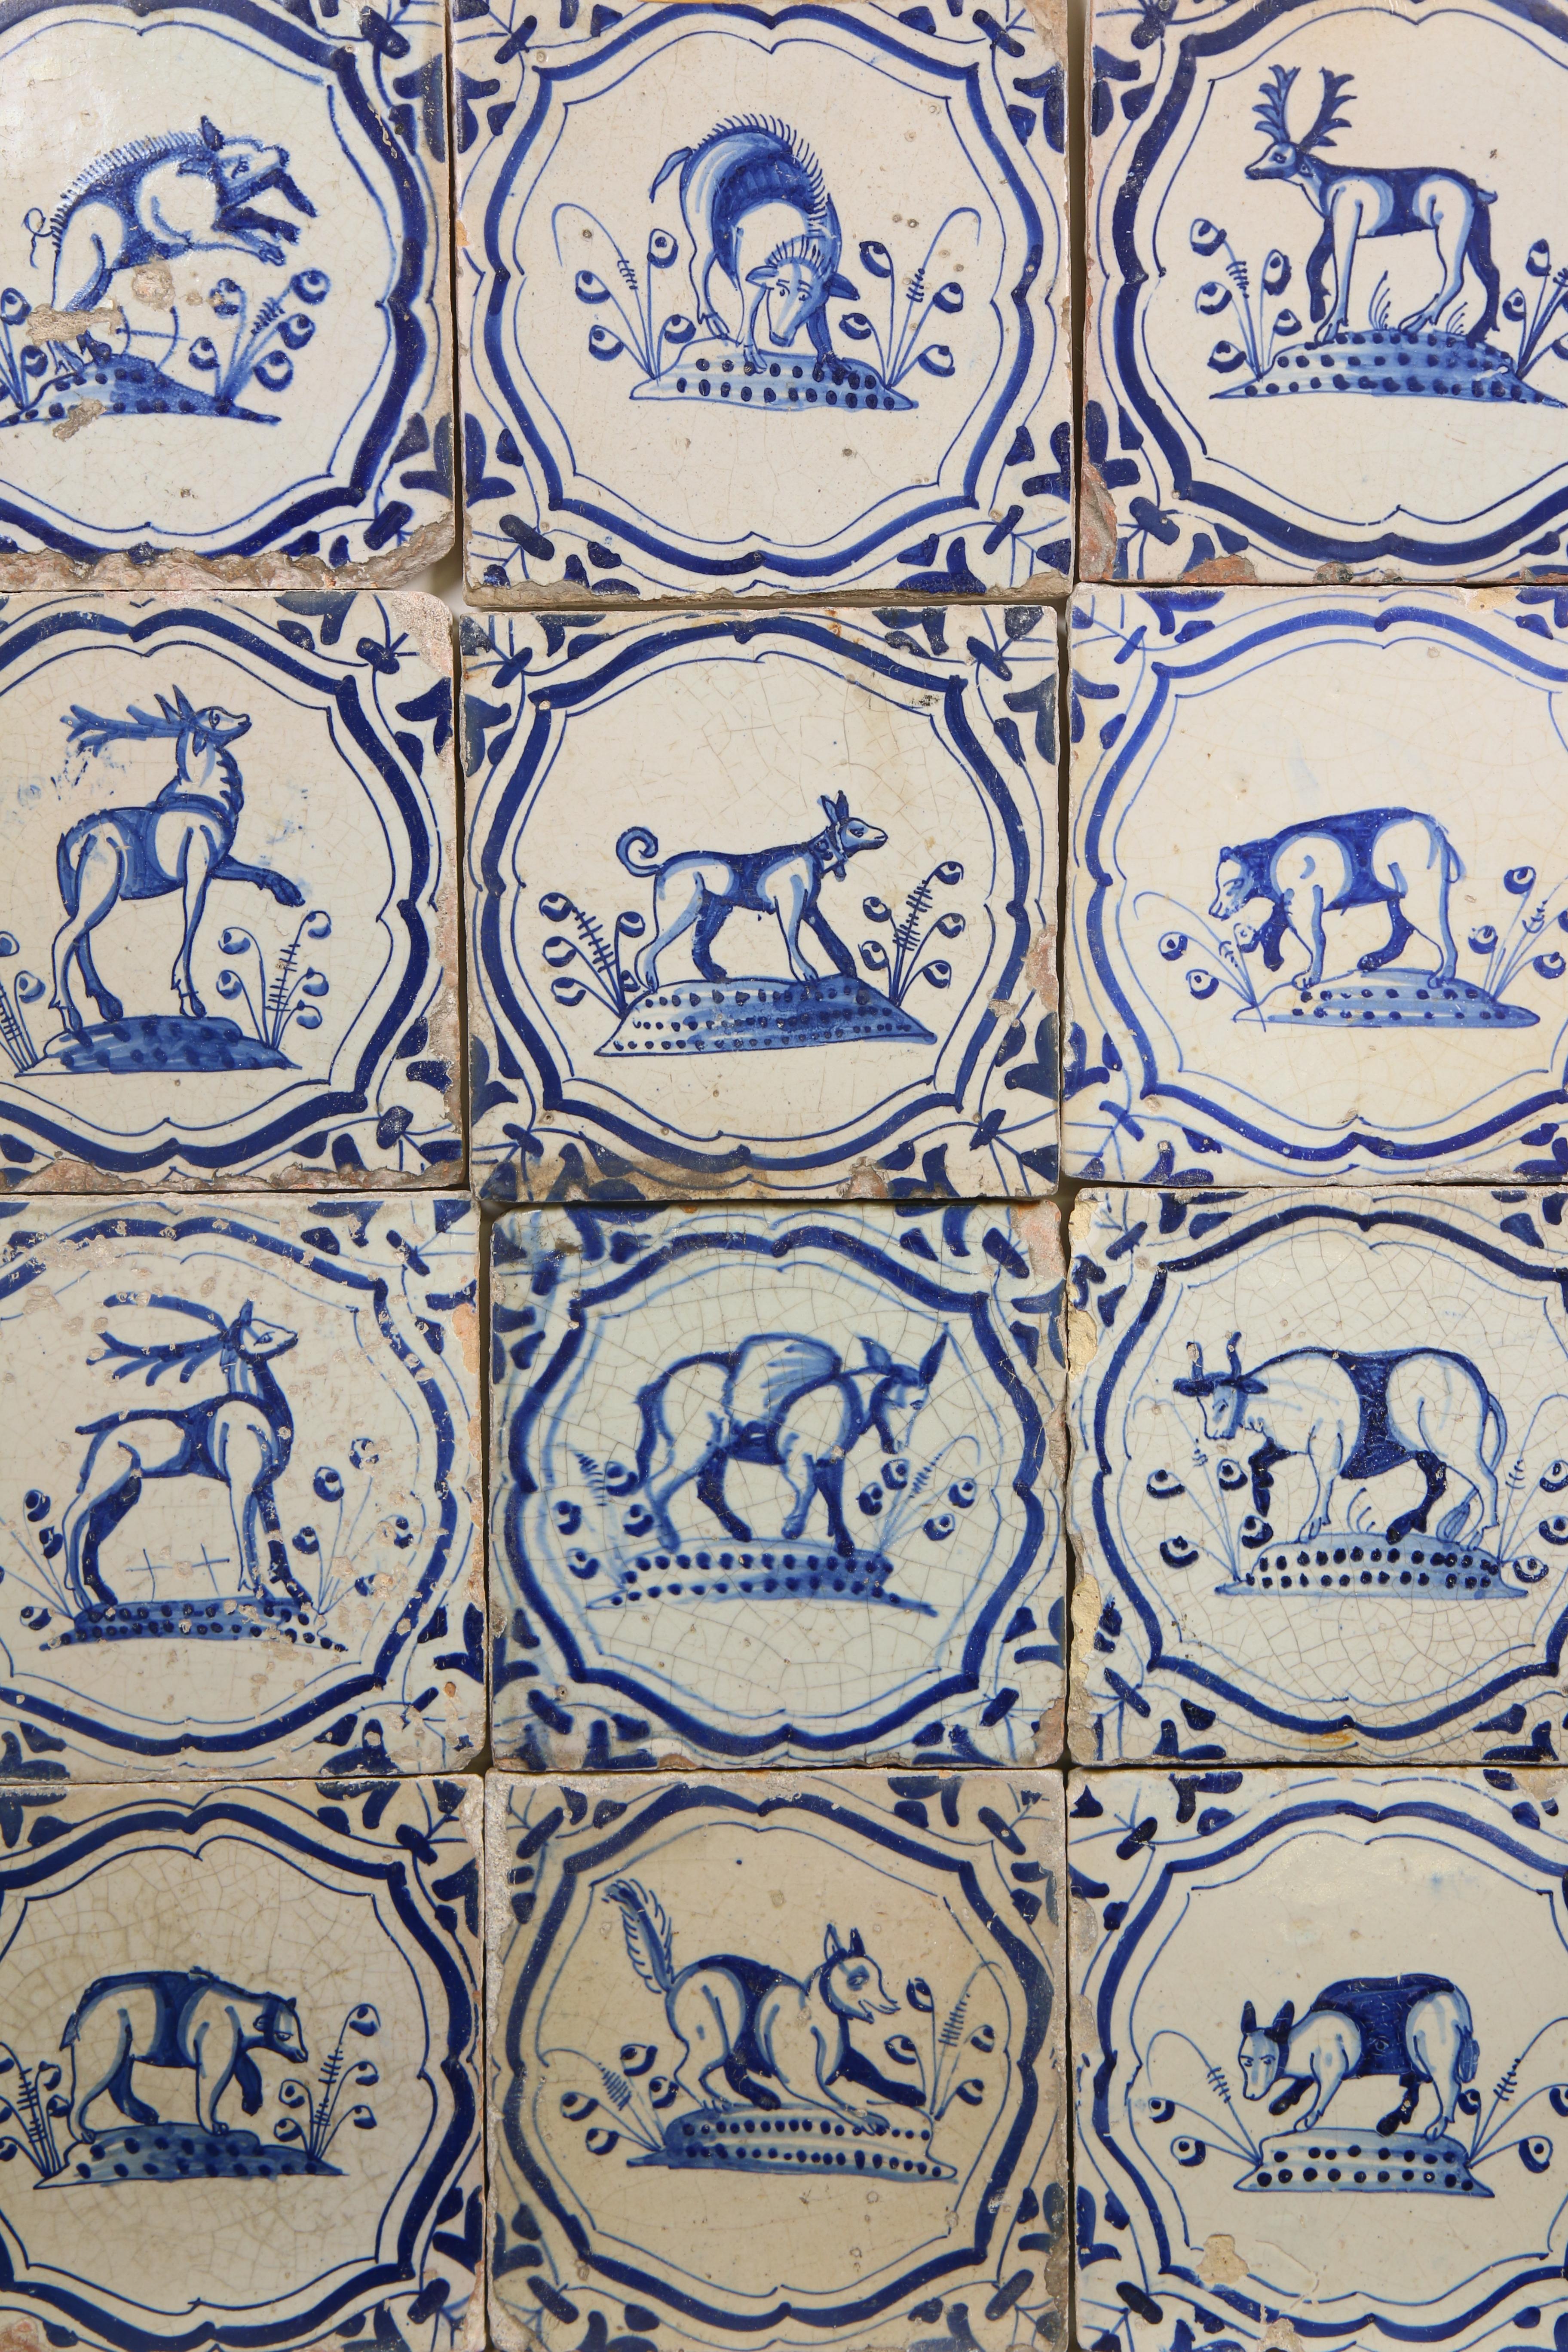 Twaalf blauw aardewerk dierendecor tegels, 1625-1650; - Image 3 of 3